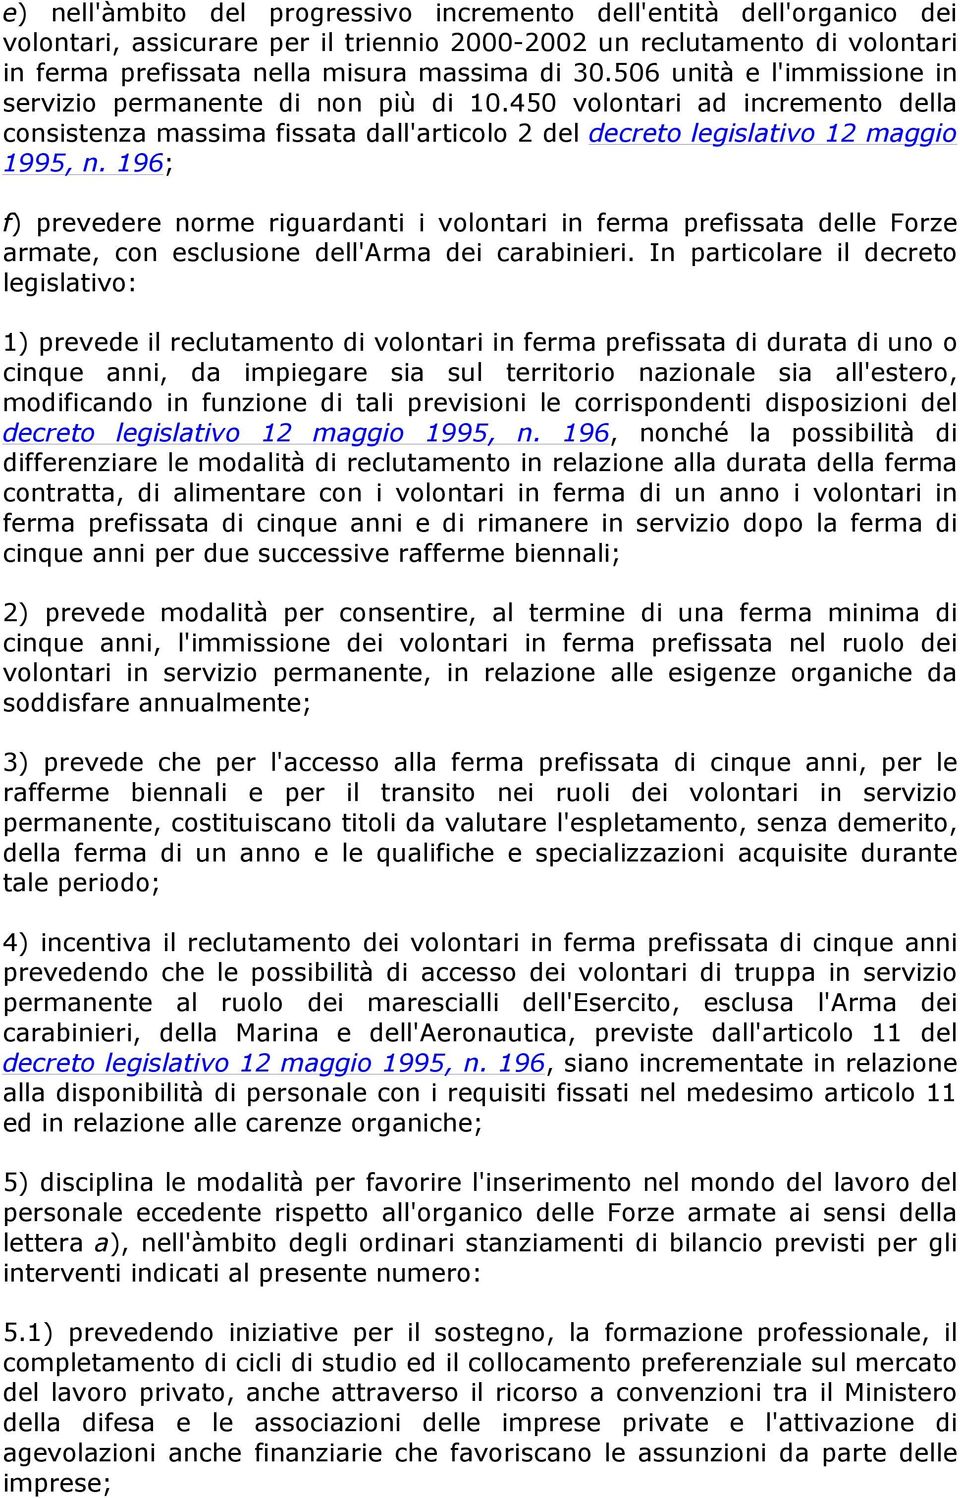 196; f) prevedere norme riguardanti i volontari in ferma prefissata delle Forze armate, con esclusione dell'arma dei carabinieri.